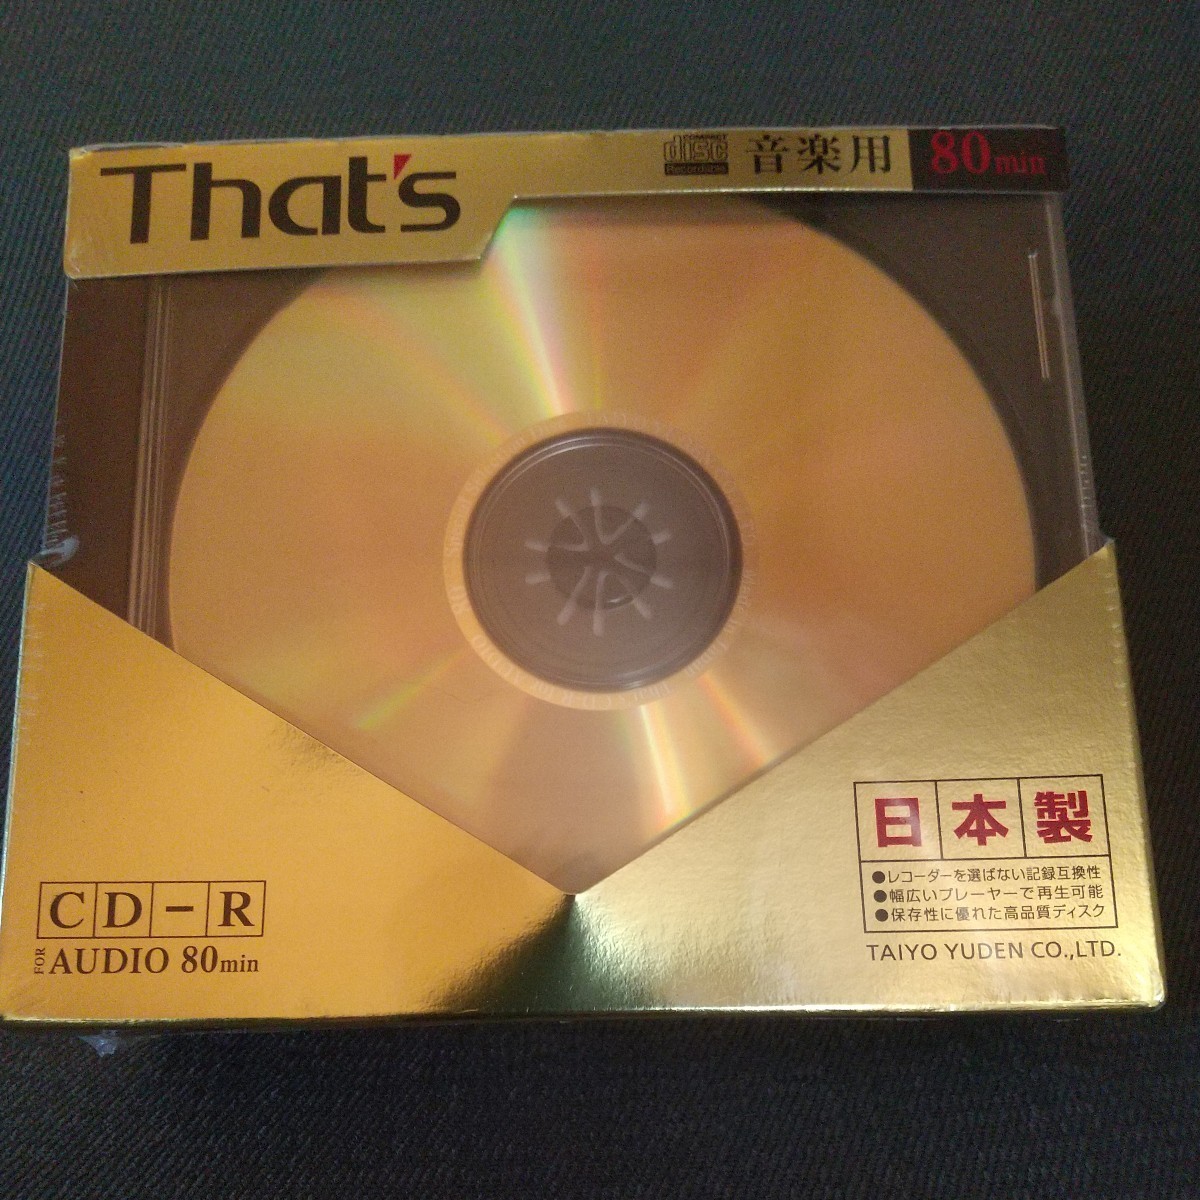 太陽誘電 That's CD-R 録音用